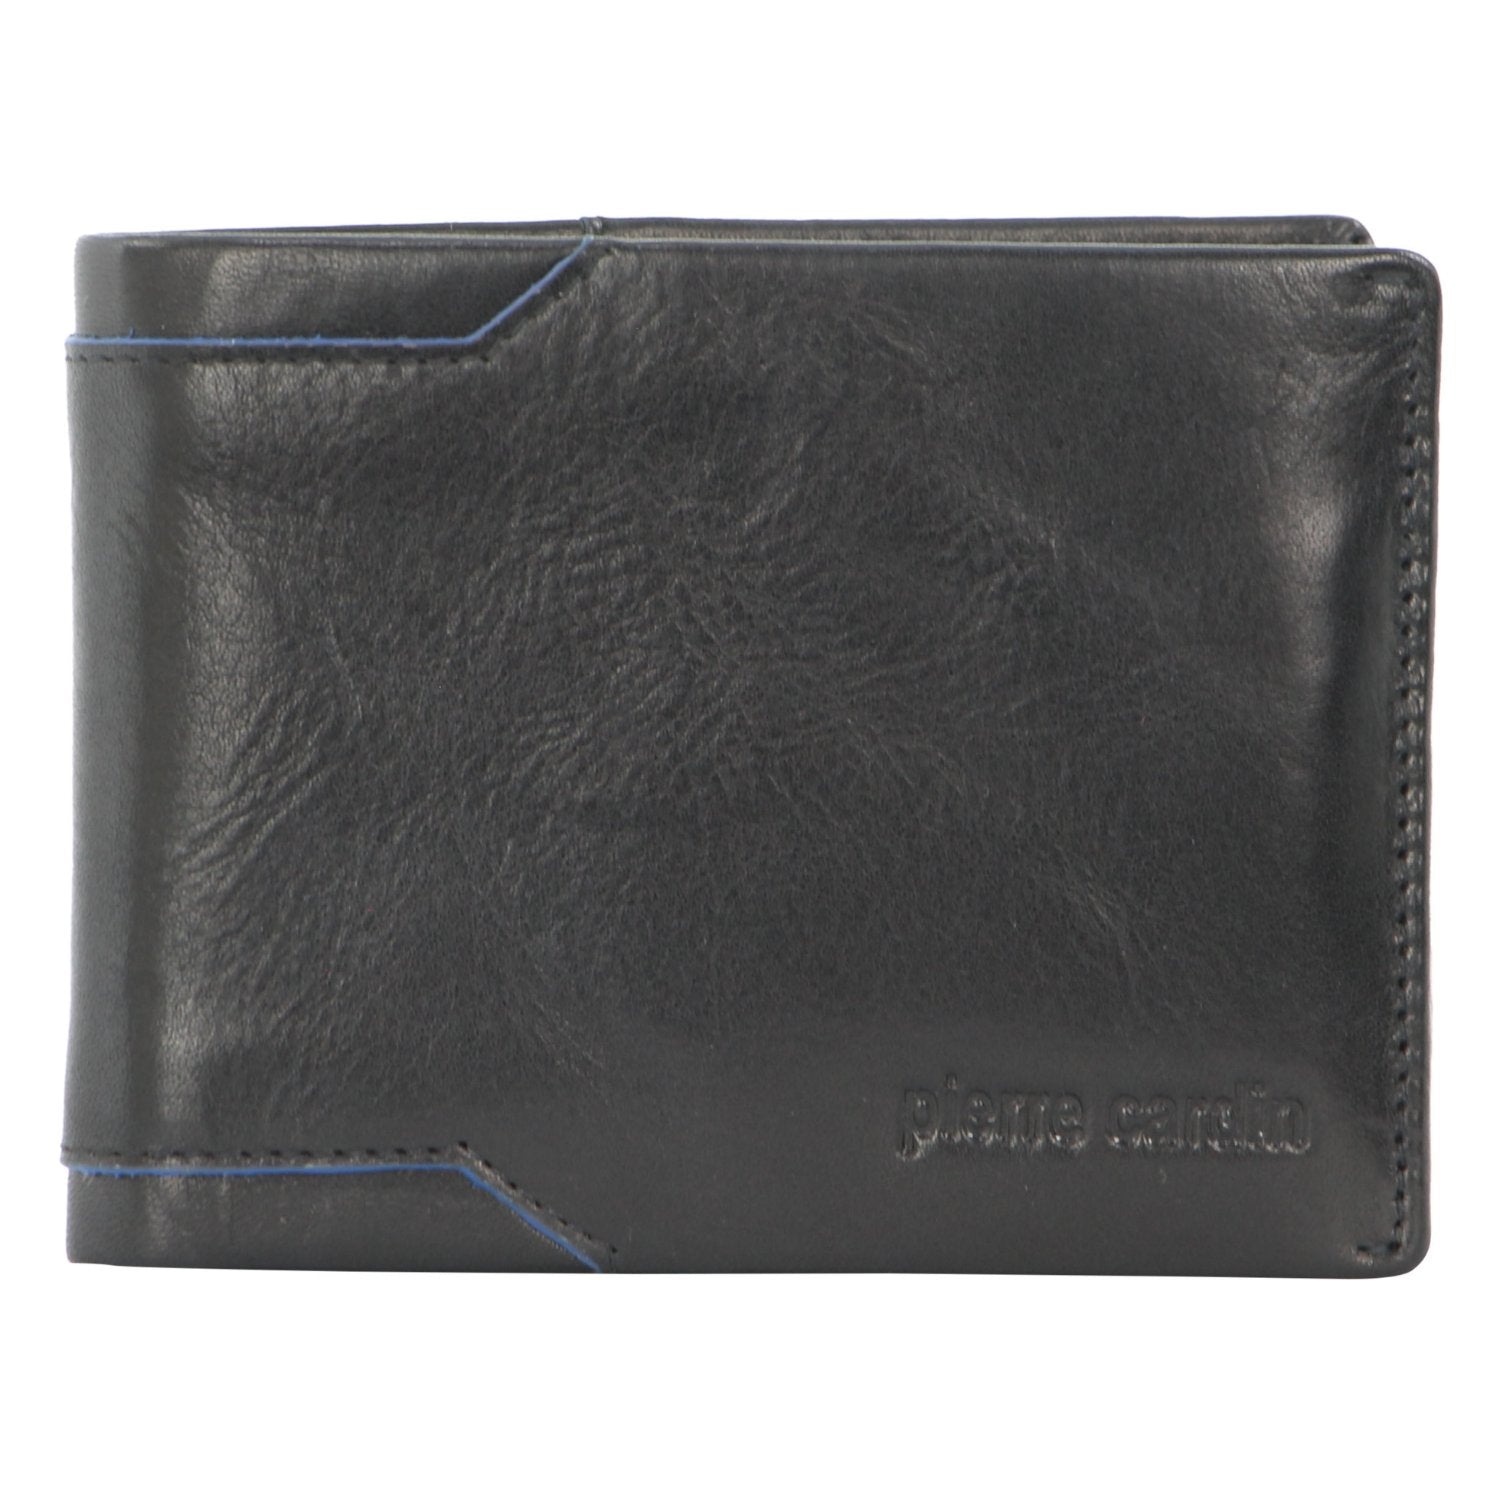 Pierre Cardin Leather Men's Bi-Fold Wallet in Black